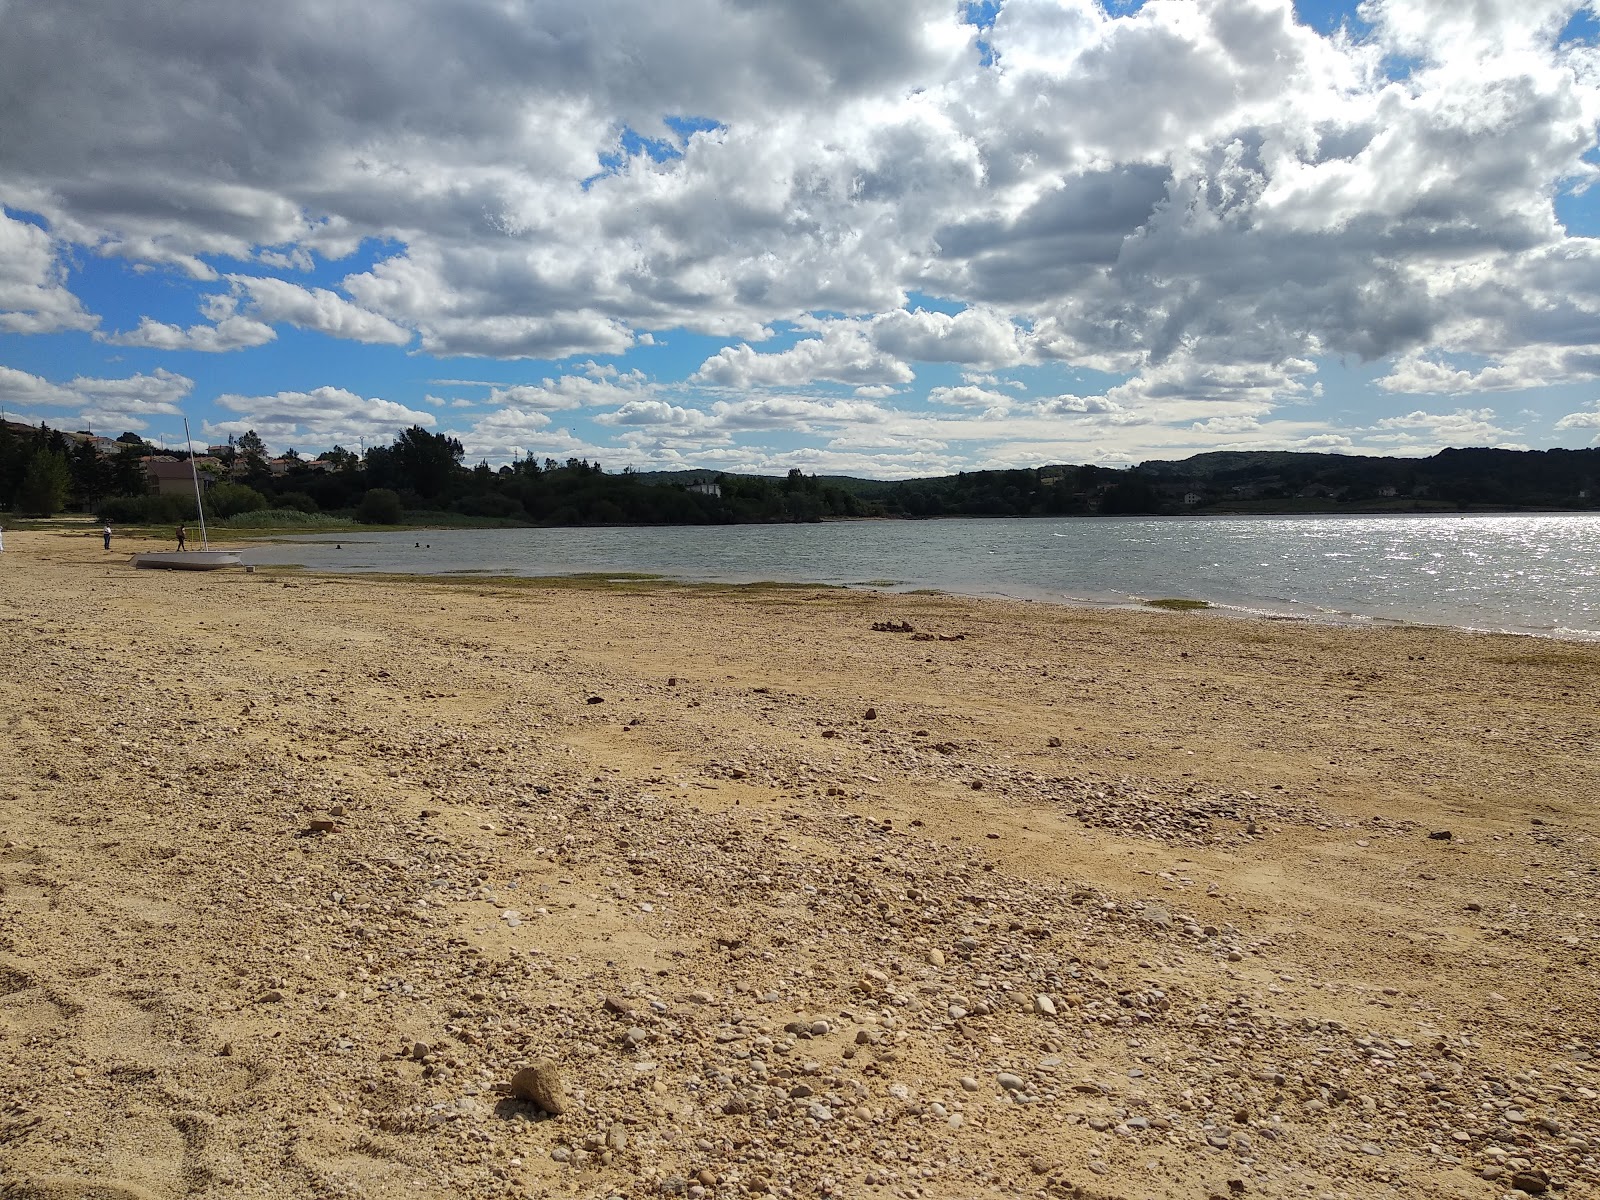 Foto de Playa Embalse del Ebro com água cristalina superfície